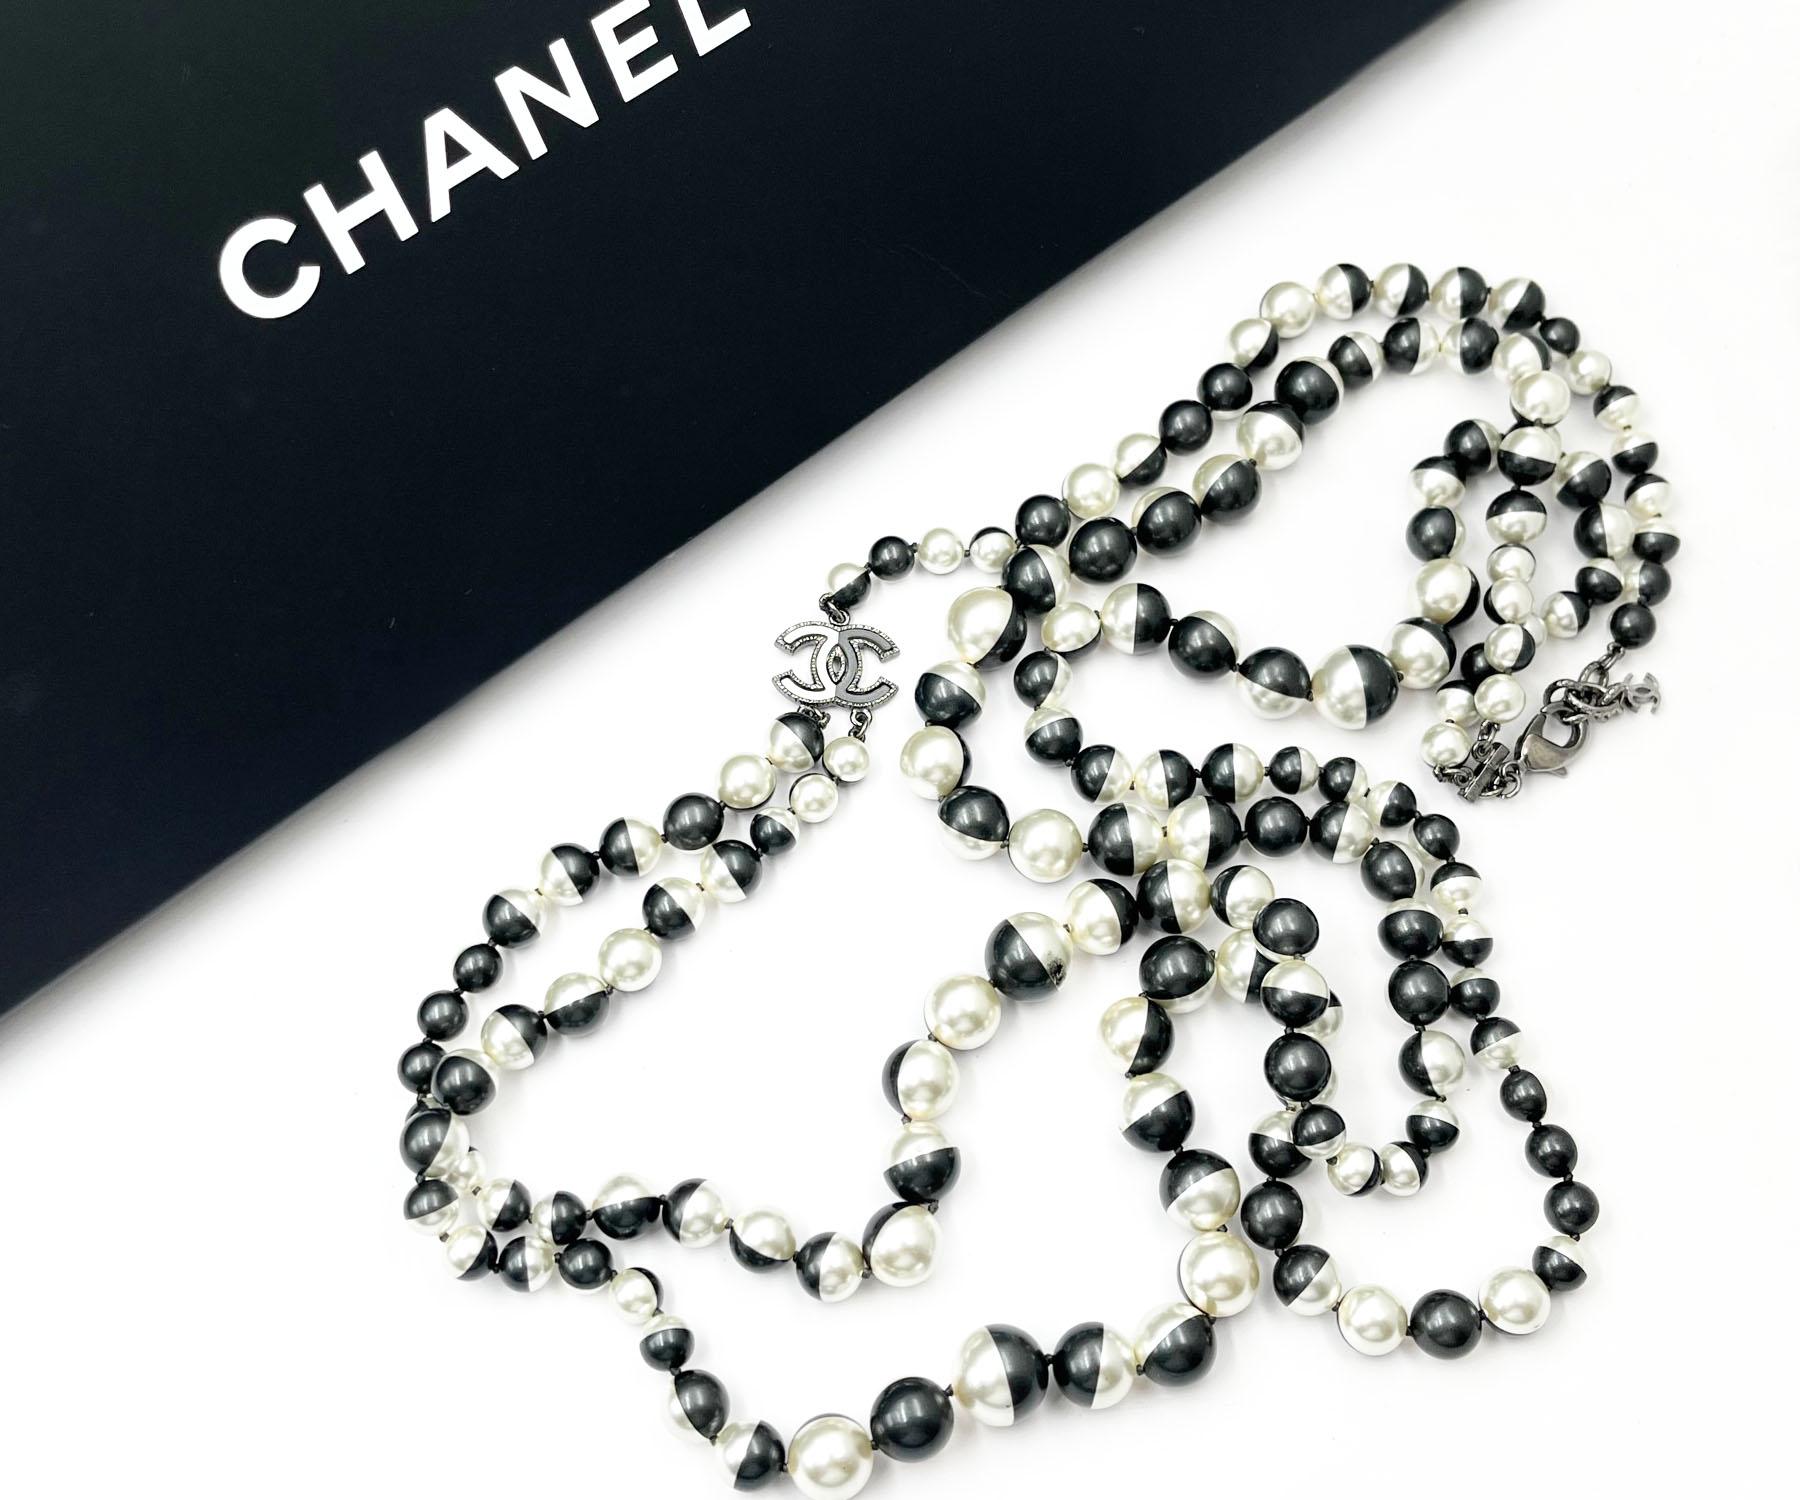 Chanel Einzigartige schwarz-weiße halber 2strängige lange Perlenkette mit Perlen

* Markiert 16
* Hergestellt in Frankreich
*Wird mit der Originalverpackung und dem Etui geliefert.

-Er ist ungefähr 42